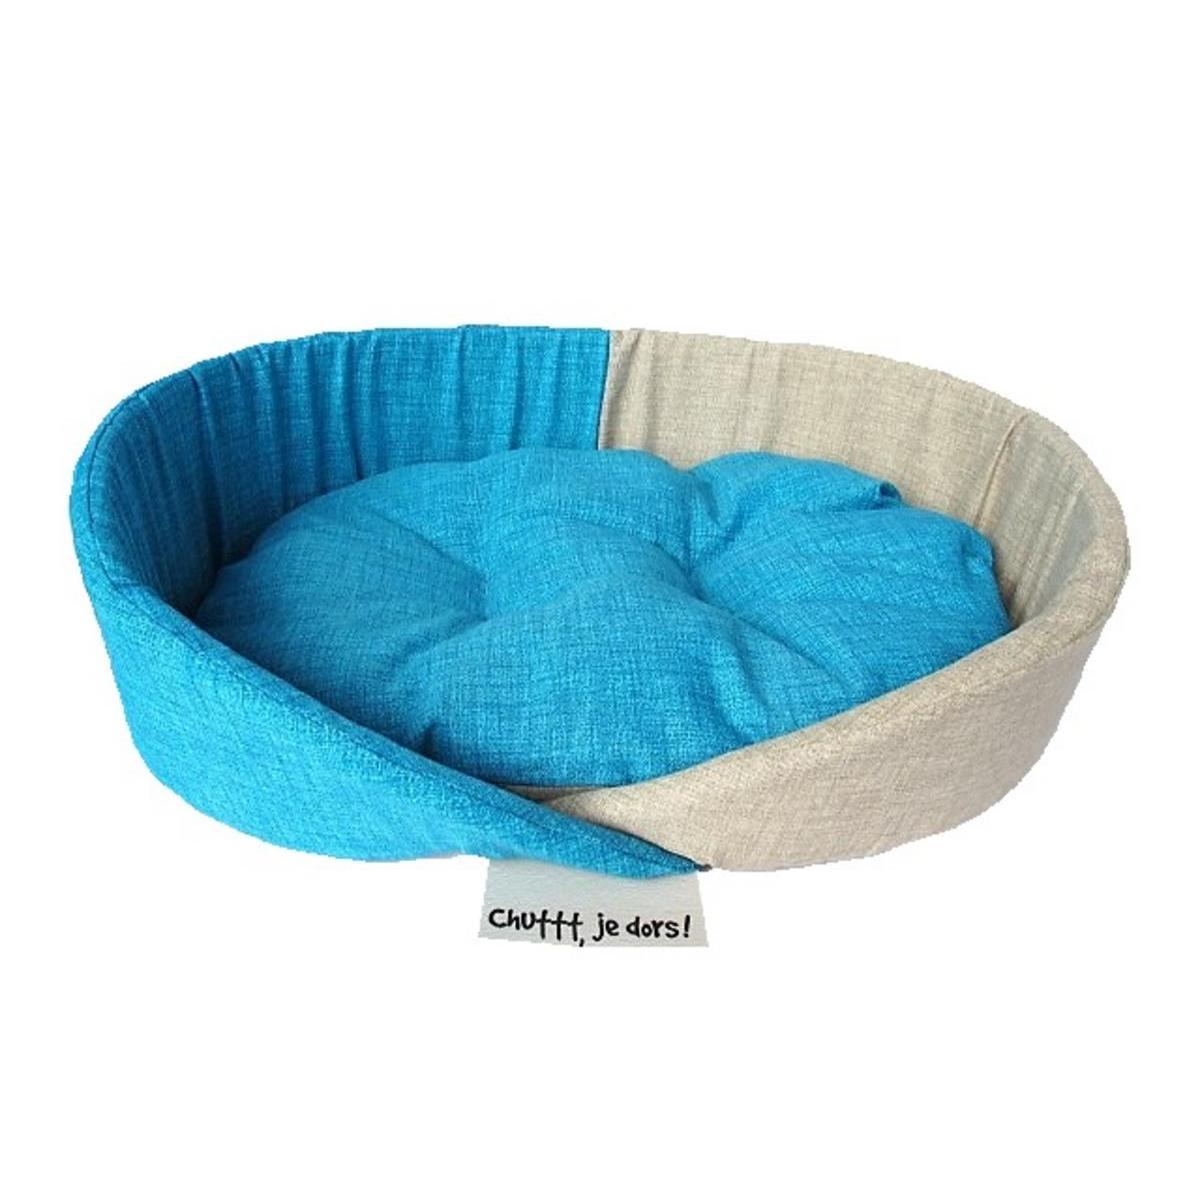 Corbeille pour chien - Polyester et coton 60 x 41 x H 15 cm - Bleu et beige